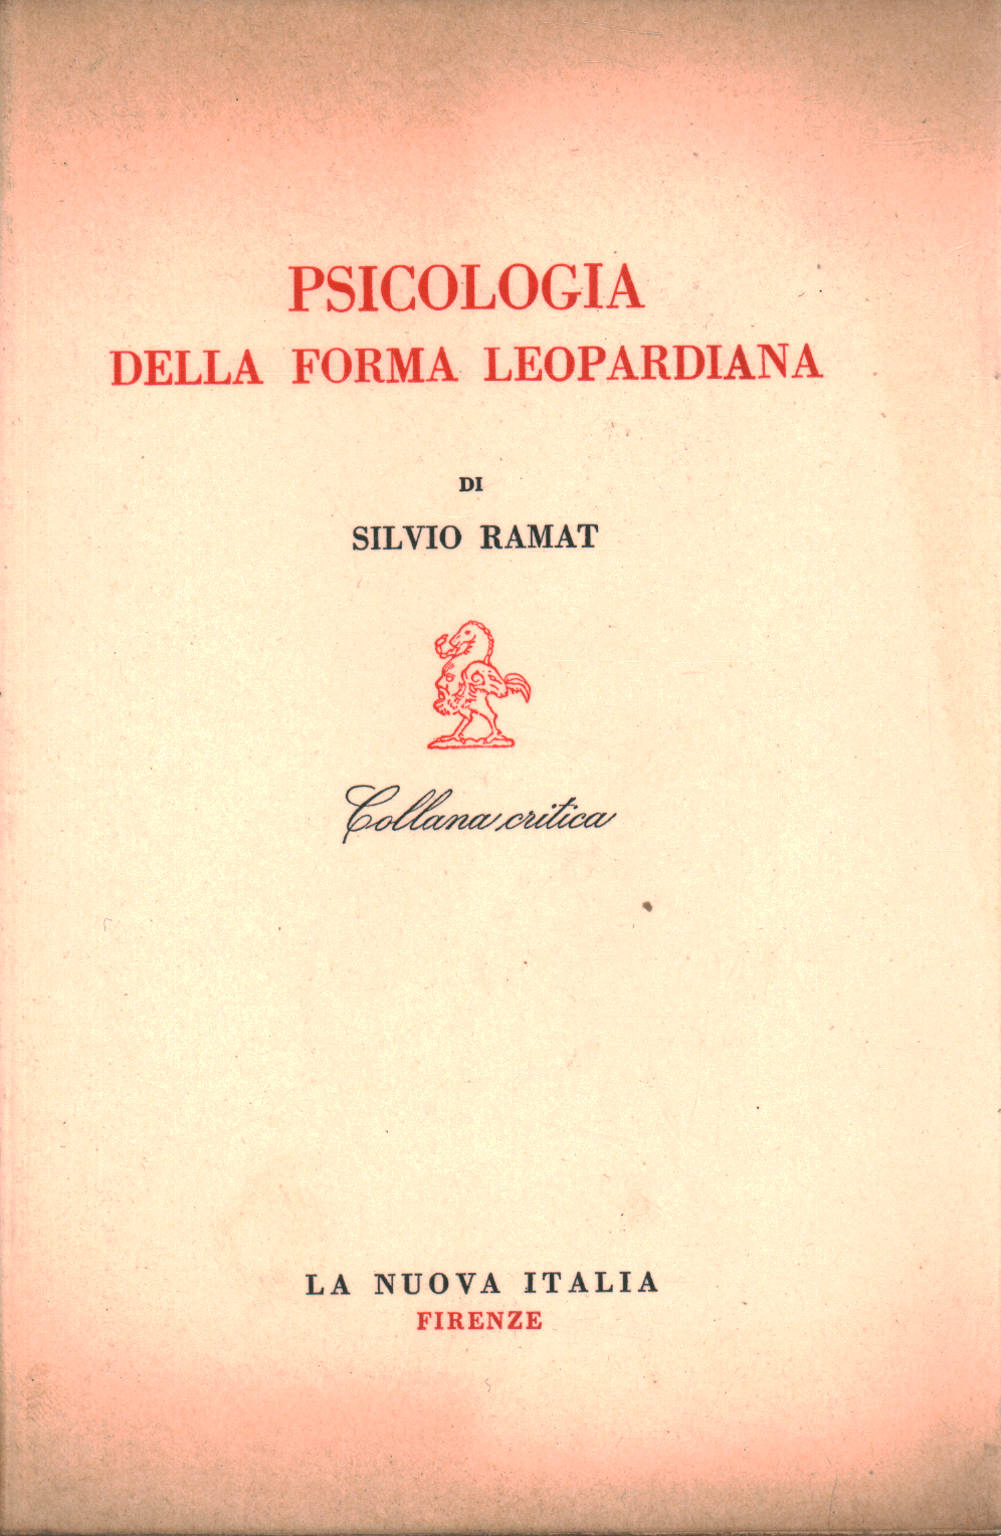 Silvio Ramat, usato, Psicologia della forma Leopardiana, Libreria